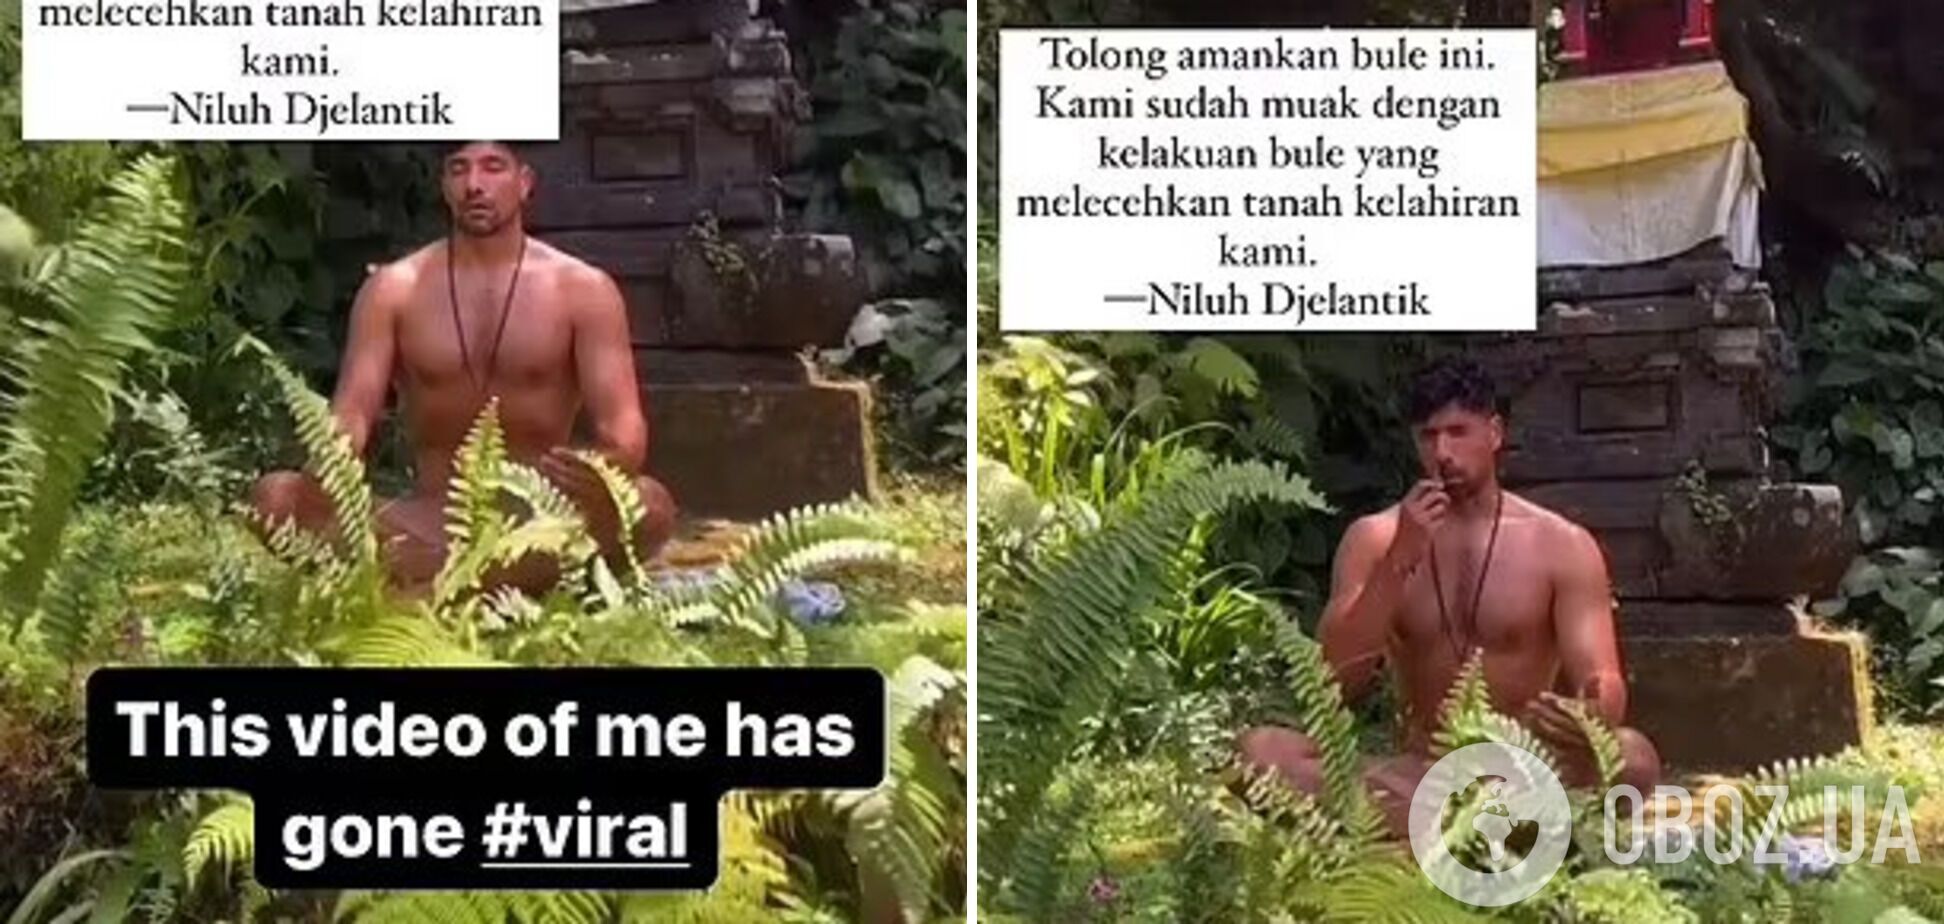 Турист, который медитировал голым в индуистском храме, поднял переполох на Бали. Видео стало вирусным